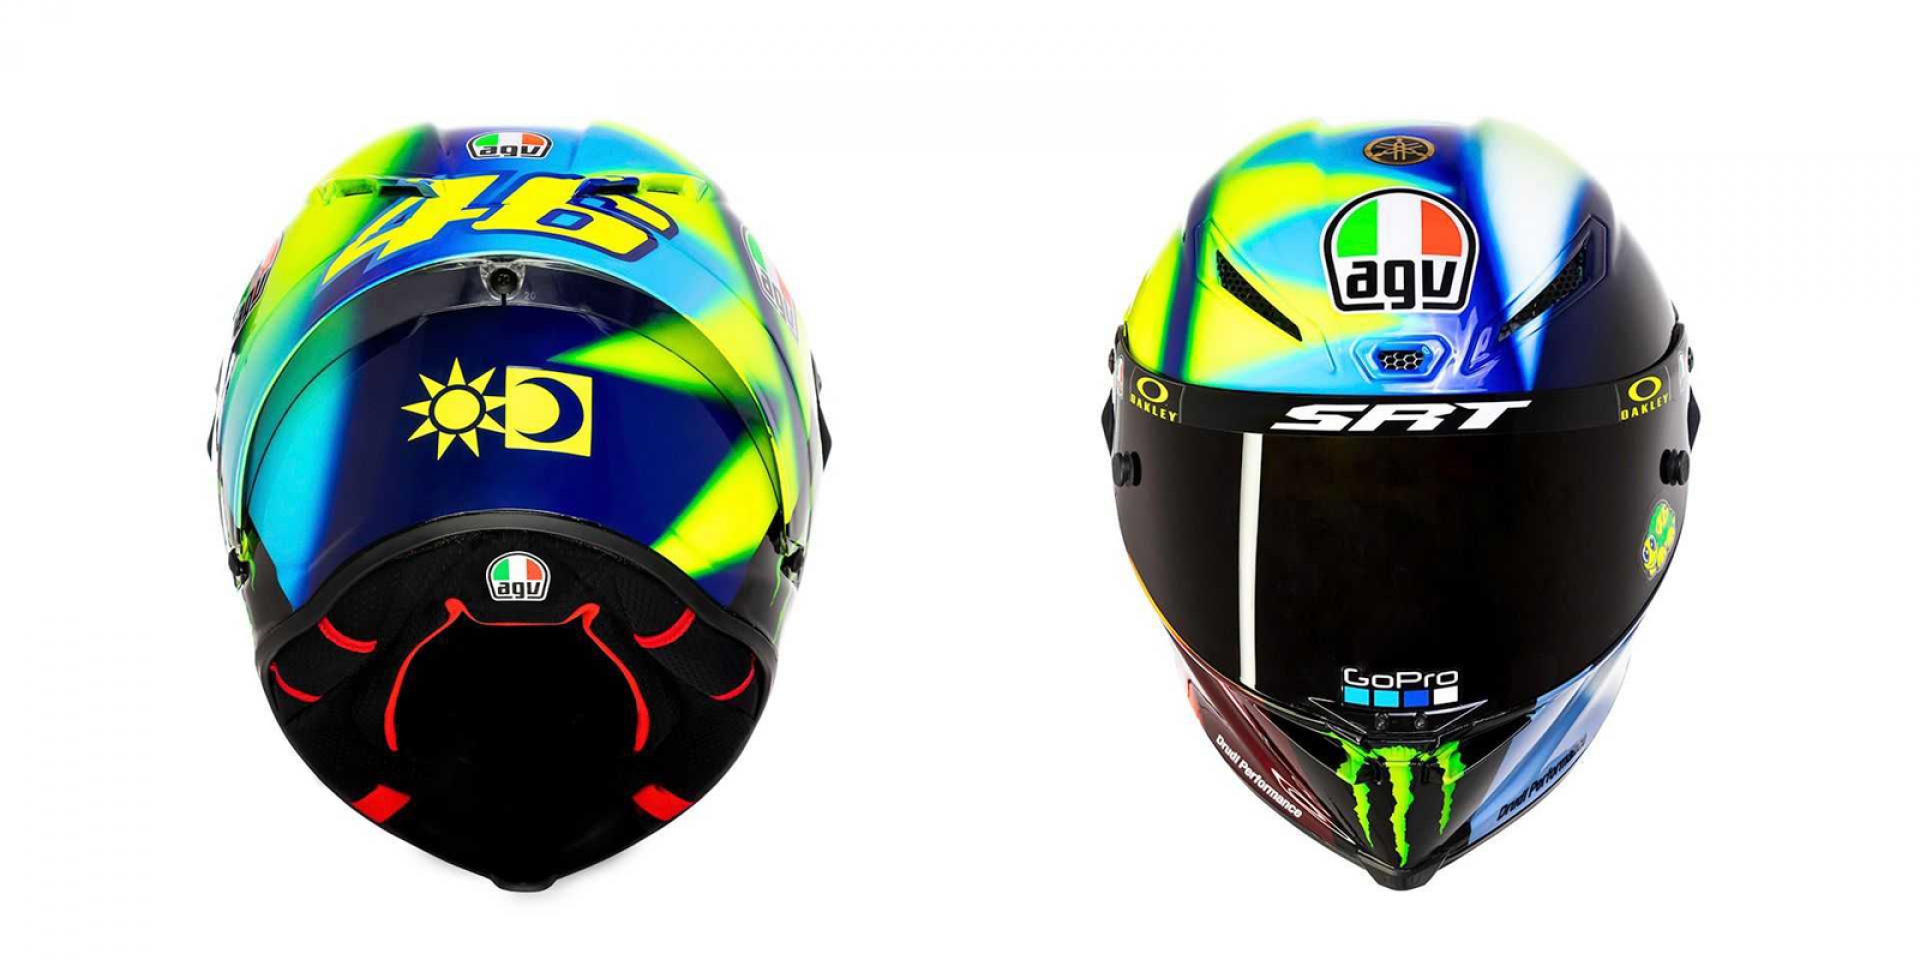 Rossi Soleluna 2021 新帽彩繪發表，國油專屬色上身！